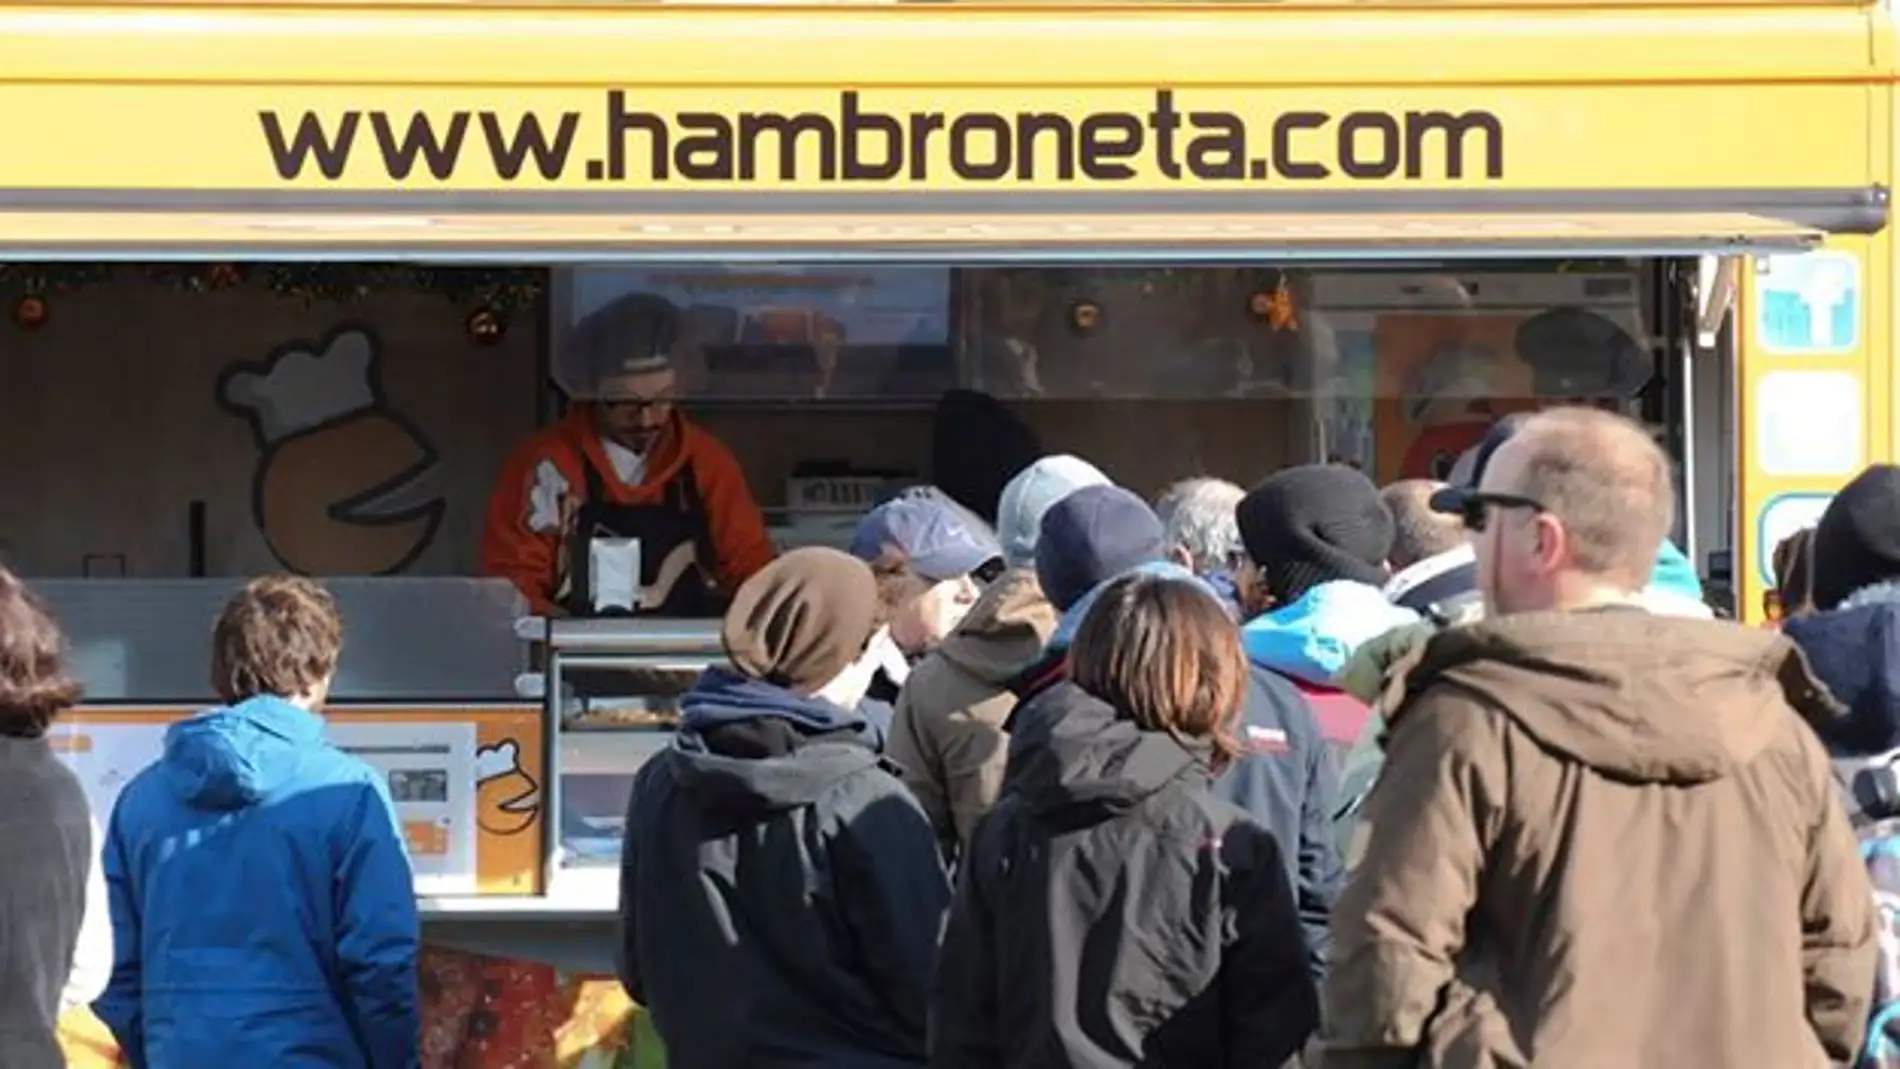 Hambroneta, uno de las primeras iniciativas del mundillo 'food truck' en España.